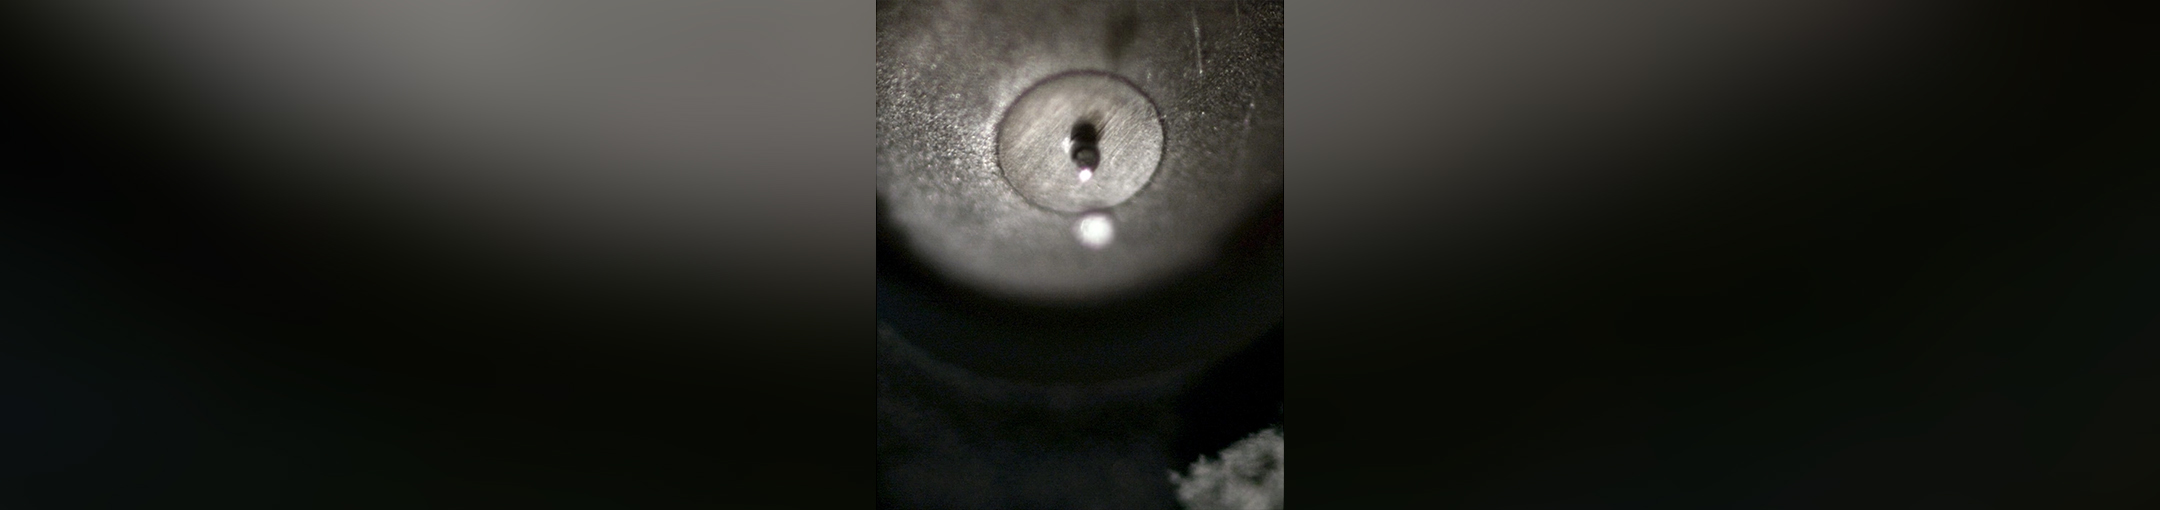 a still frame metal droplet jetting